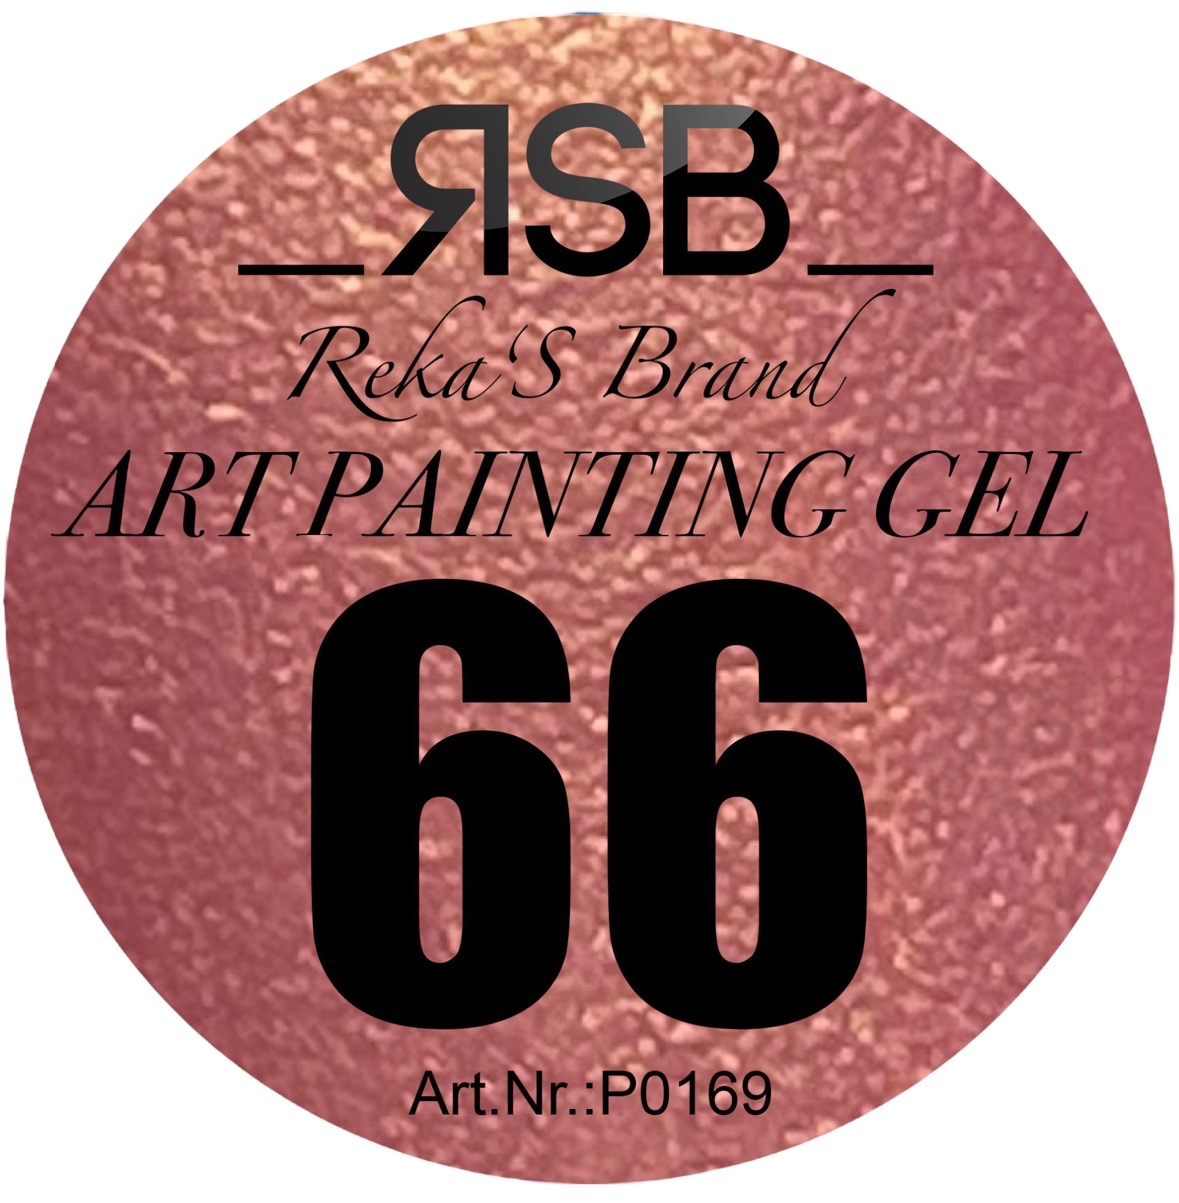 ART PAINTING GEL 66